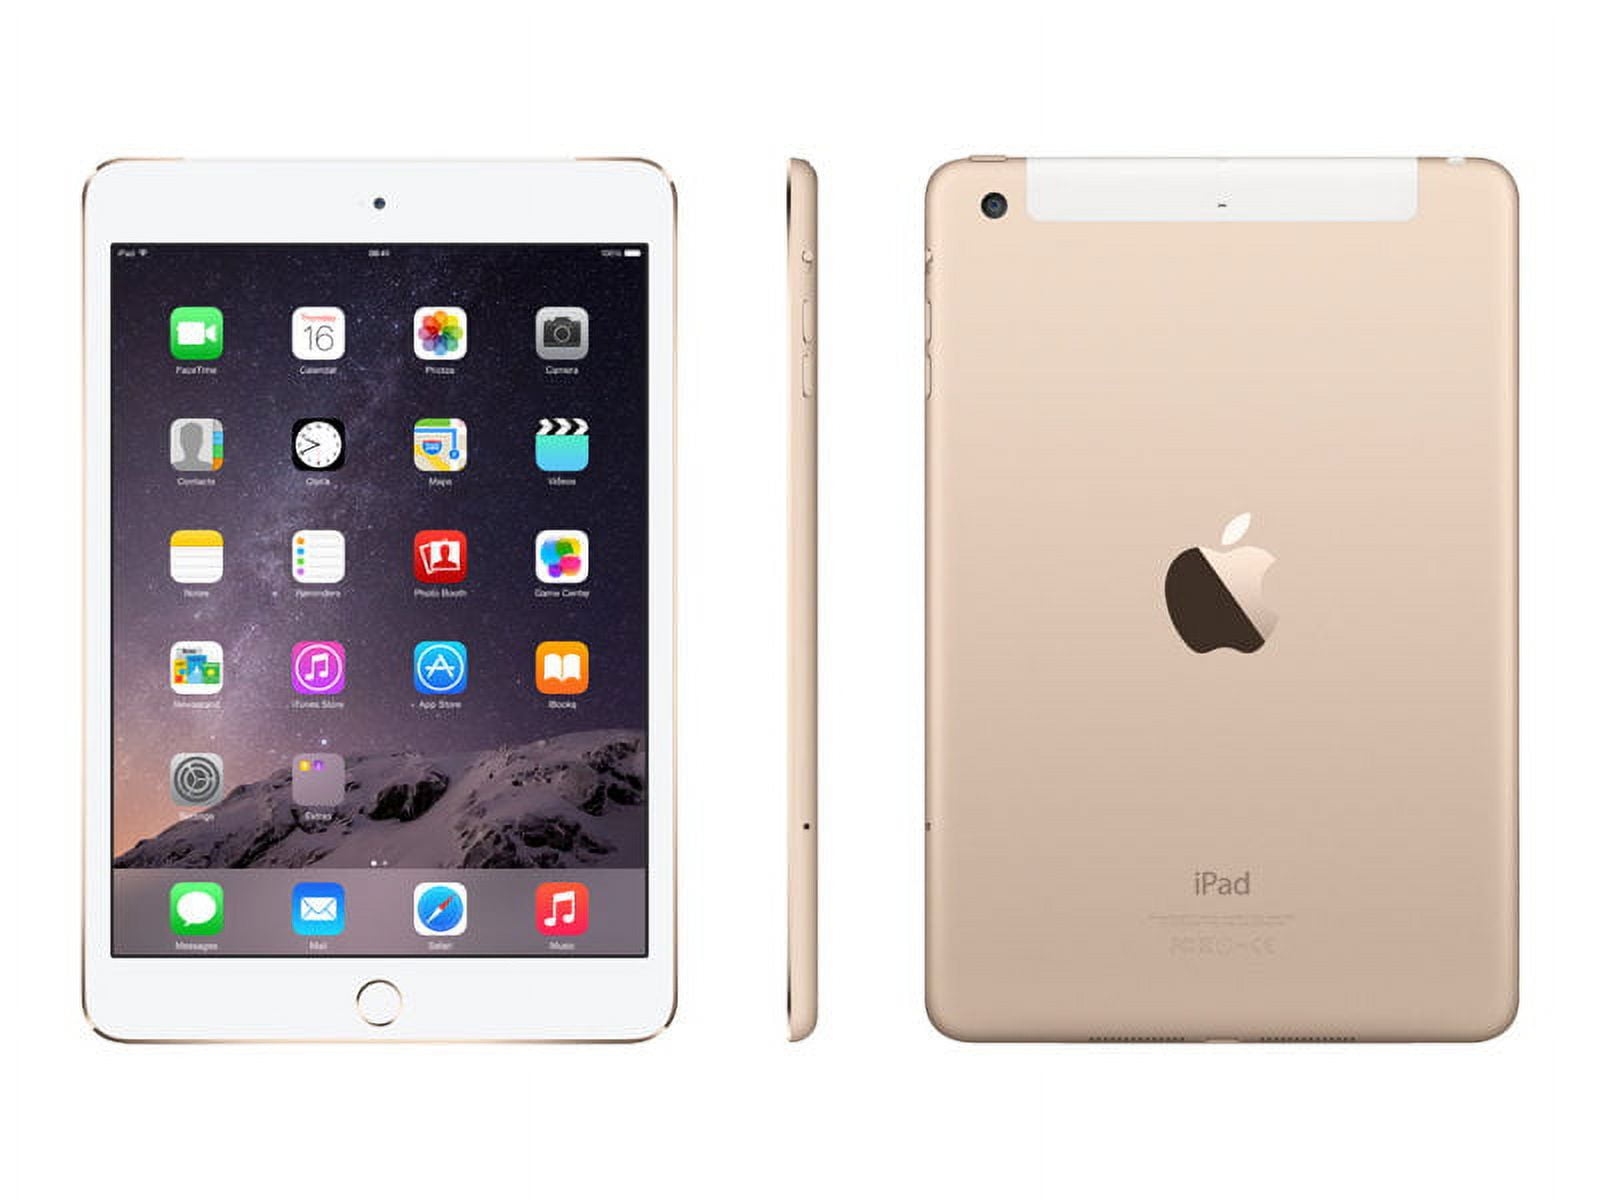 Apple iPad mini 4 Wi-Fi + Cellular - 4th generation - tablet - 128 